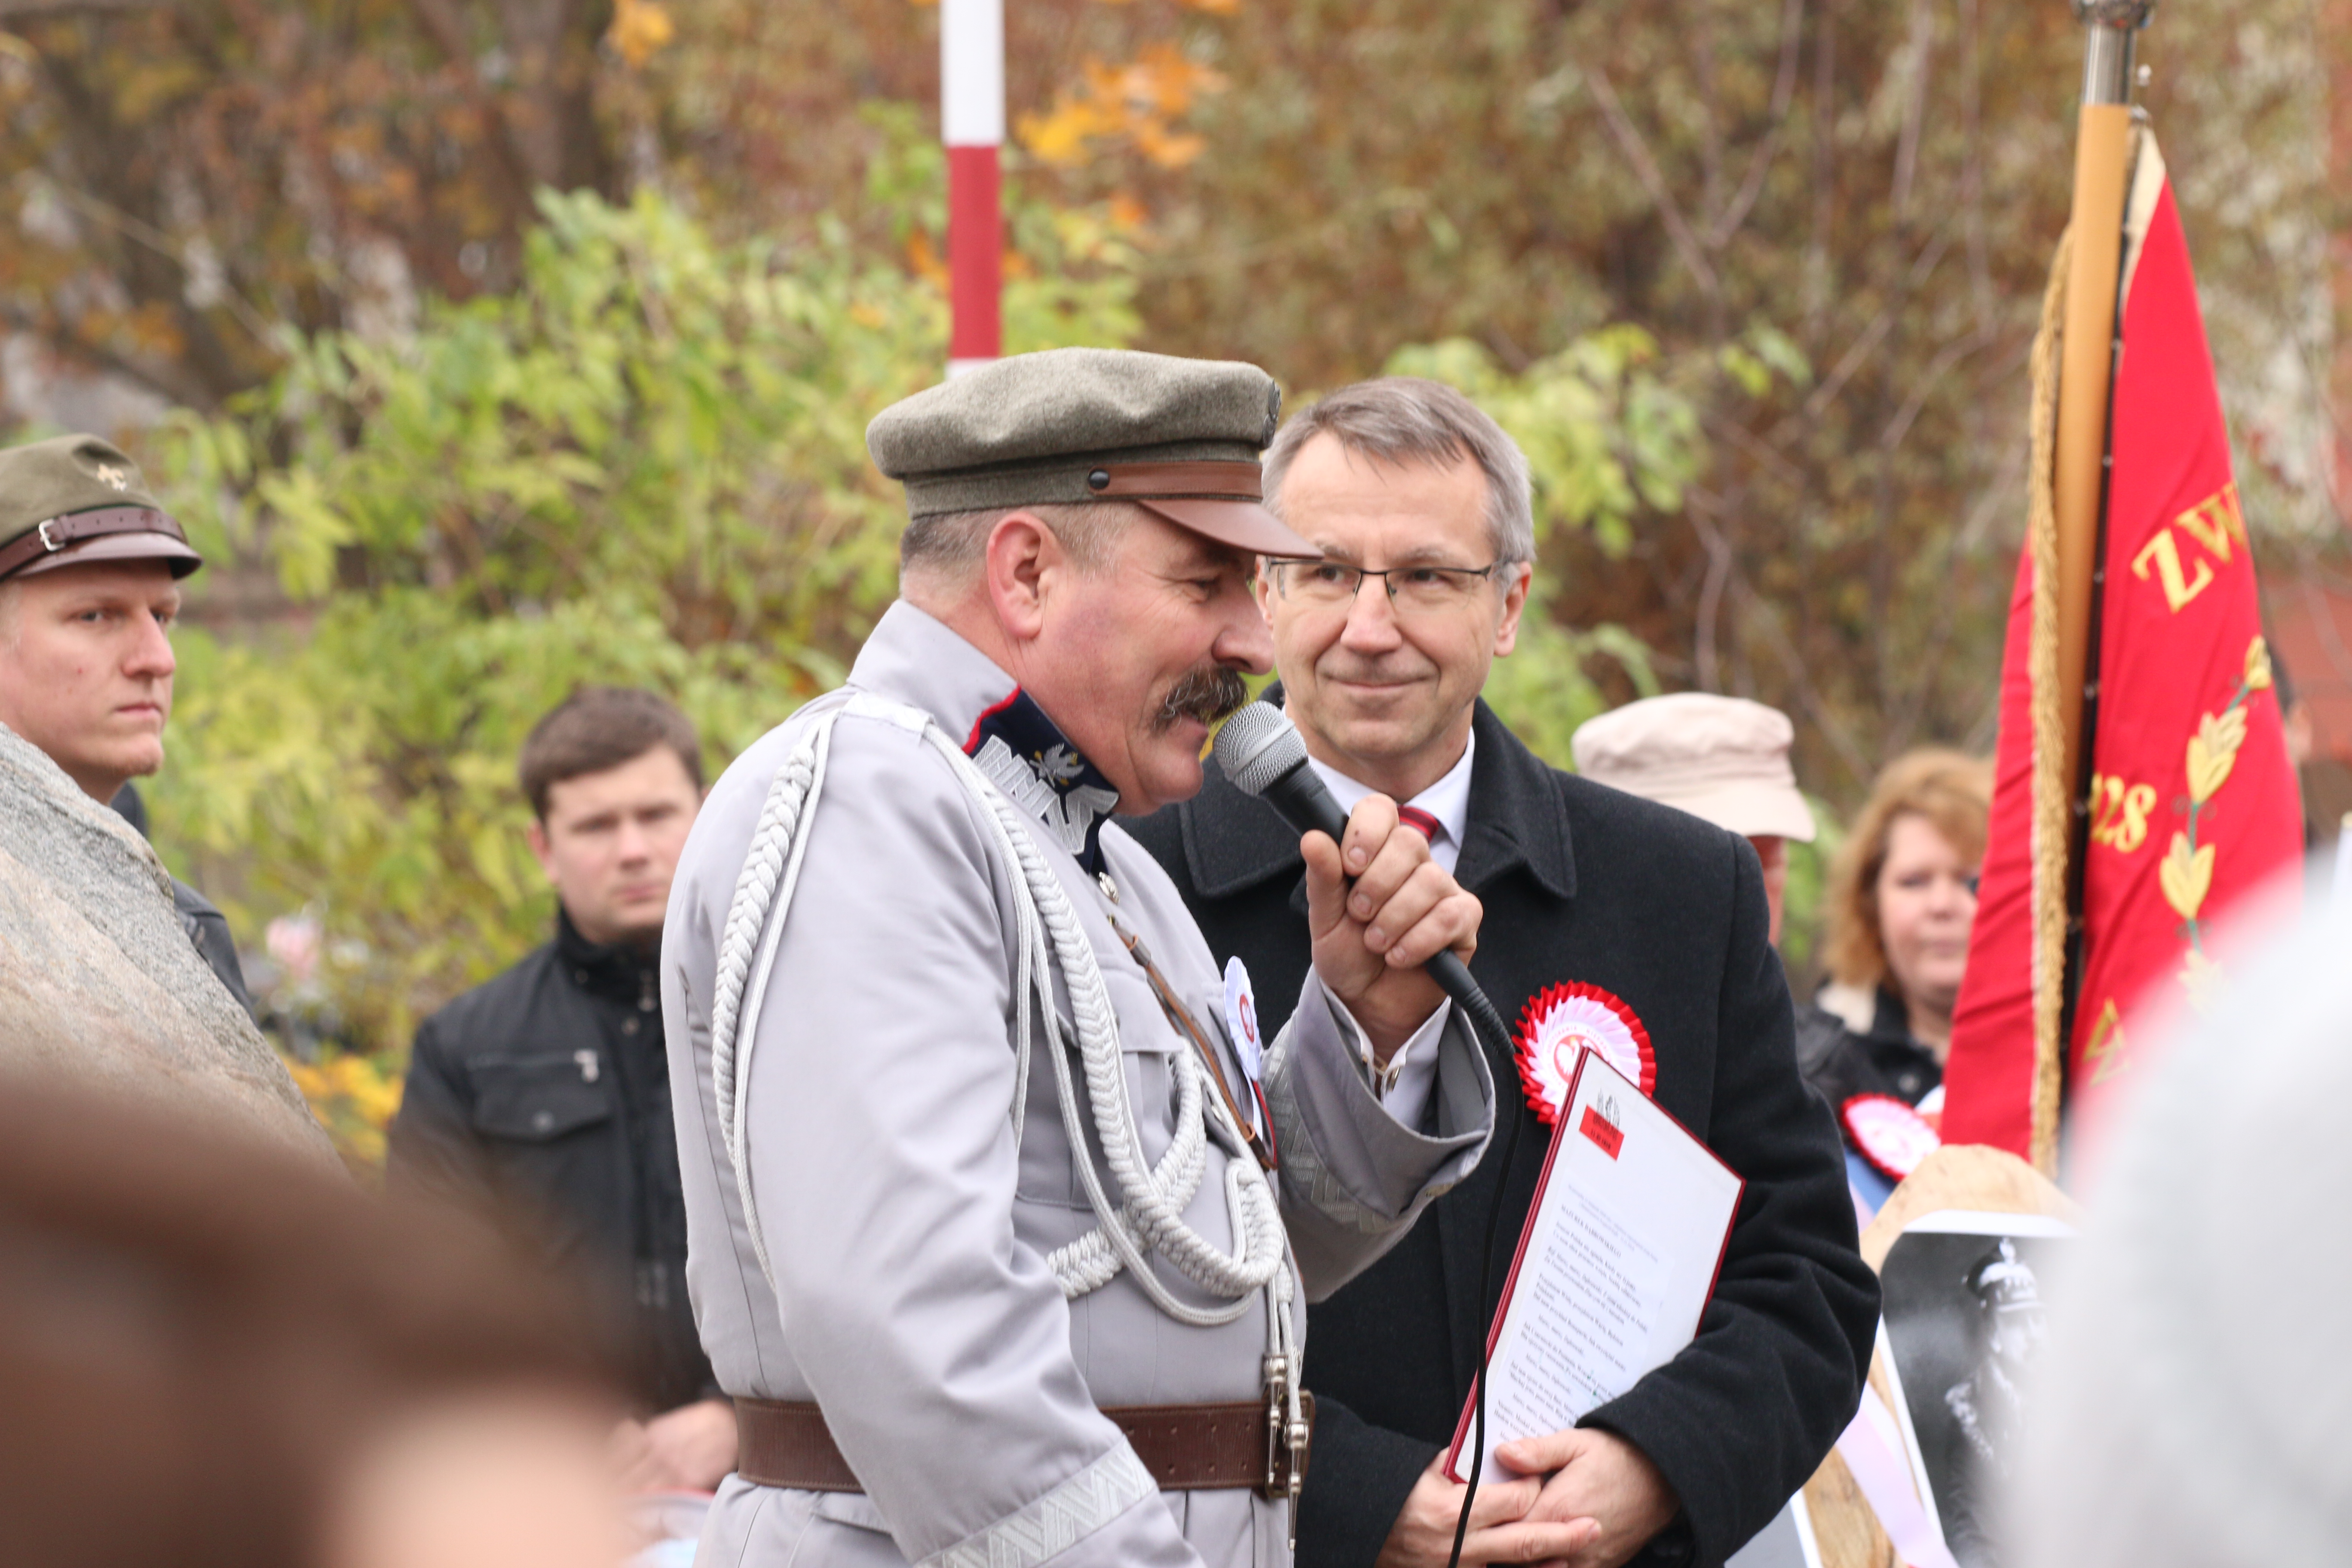 Grupa Rekonstrukcyjna Nałęcz z Trzebiatowa i pan Jerzy Nowak wcielający się w postać Józefa Piłsudskiego zadbali o uroczystą oprawę Święta Niepodległości.